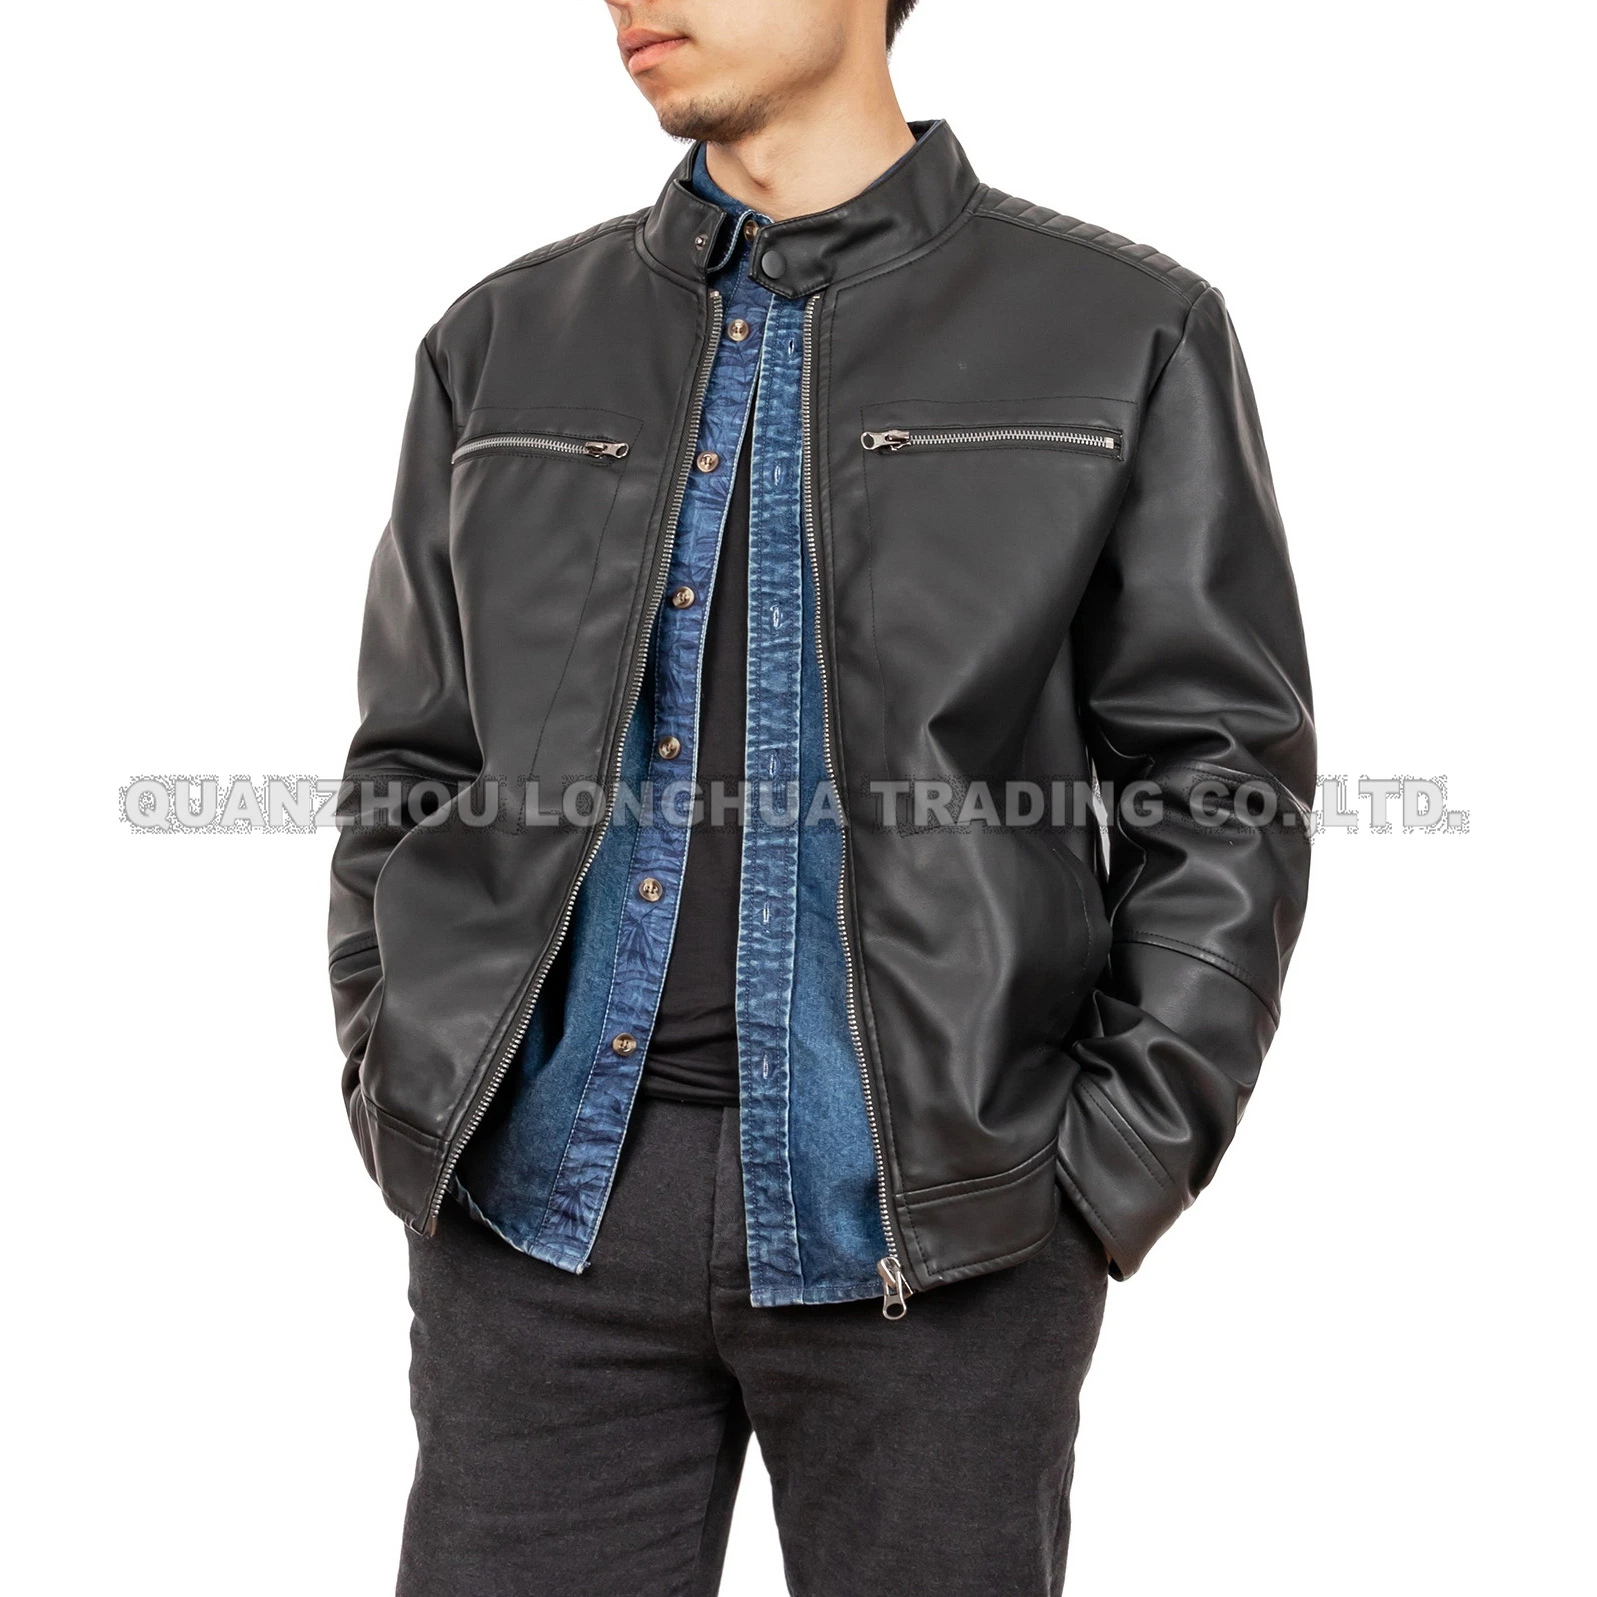 Herren Jacke Boy Jacke New Washed Leather Bekleidung Schwarz PU Kleidung Mode Kleidung Outdoor Mantel